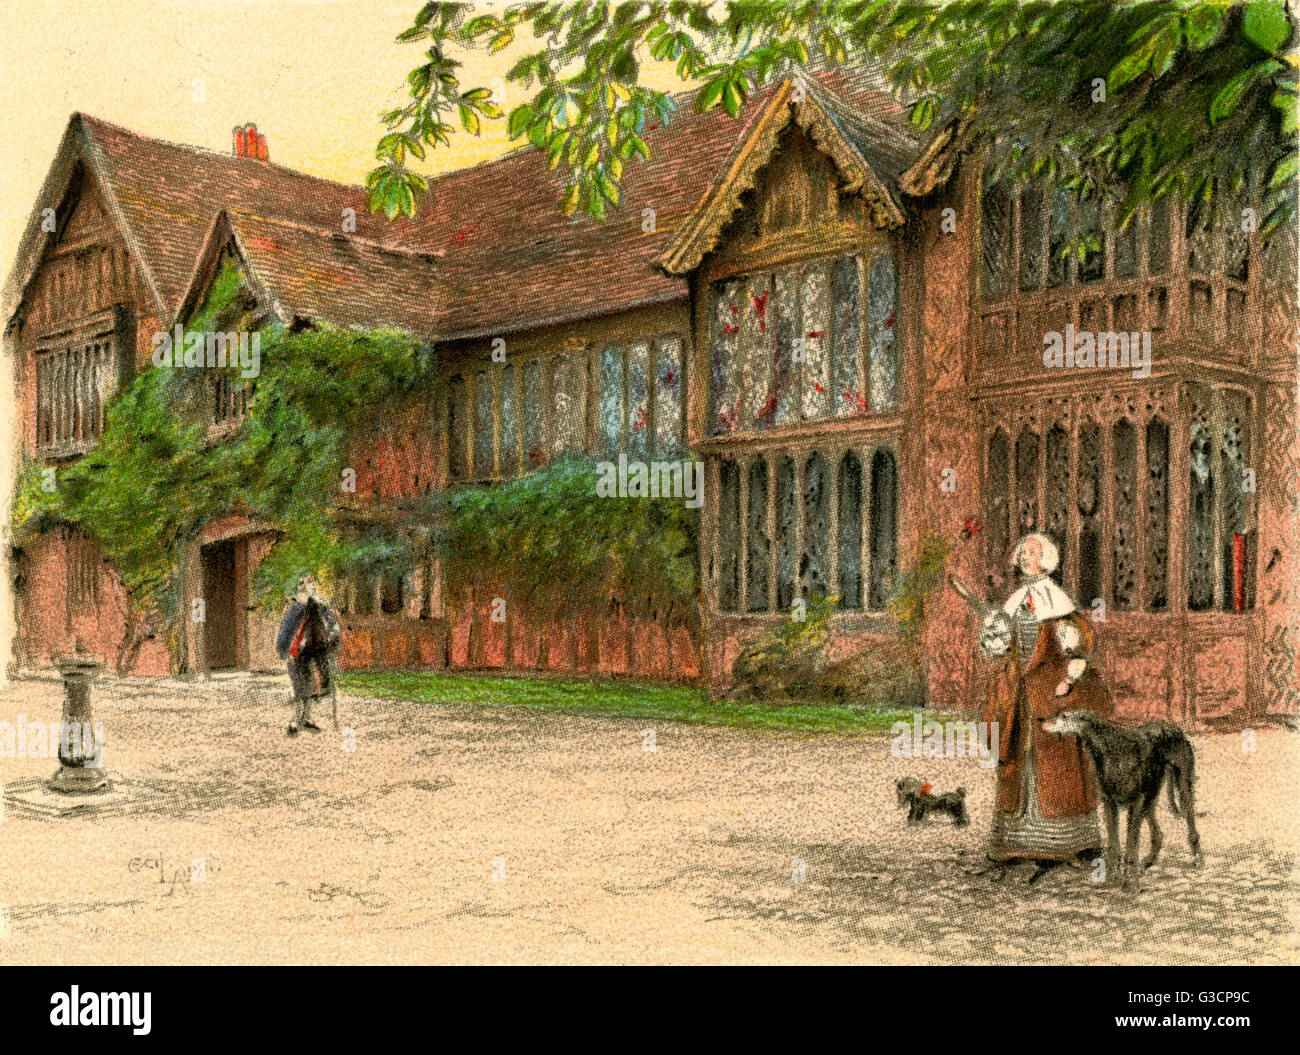 Illustration par Cecil Aldin, Vieux manoirs -- Ockwells Manor House, un 15e siècle manoir à pans de bois, près de Maidenhead, Berkshire. Montrant l'avant de la maison avec les gens et les chiens. Date : 1923 Banque D'Images